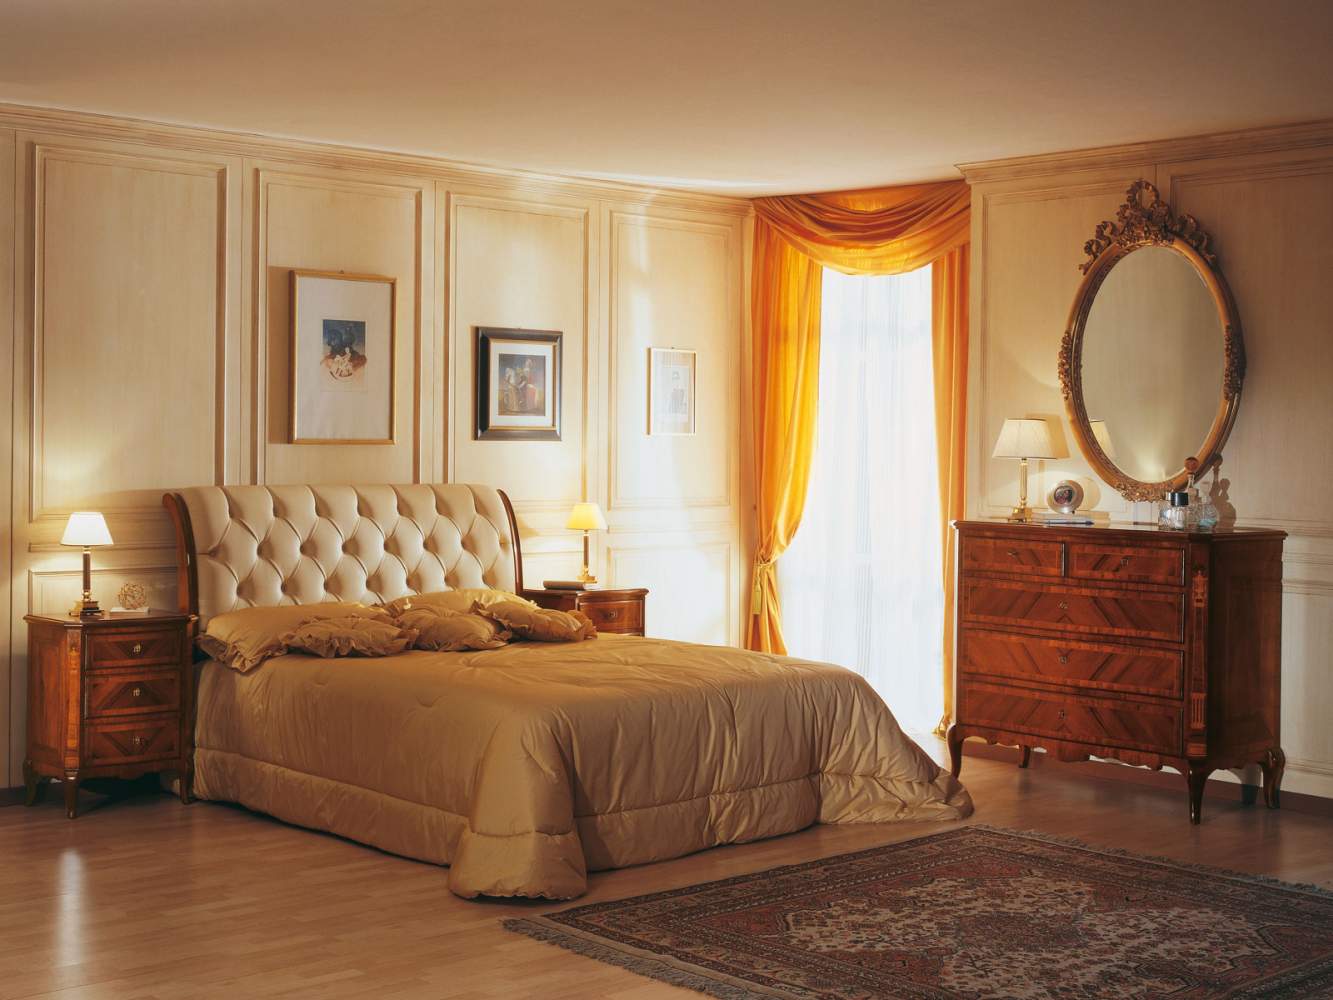 Camera da letto francese nello stile in voga nell’800 con arredi notte in noce intarsiato